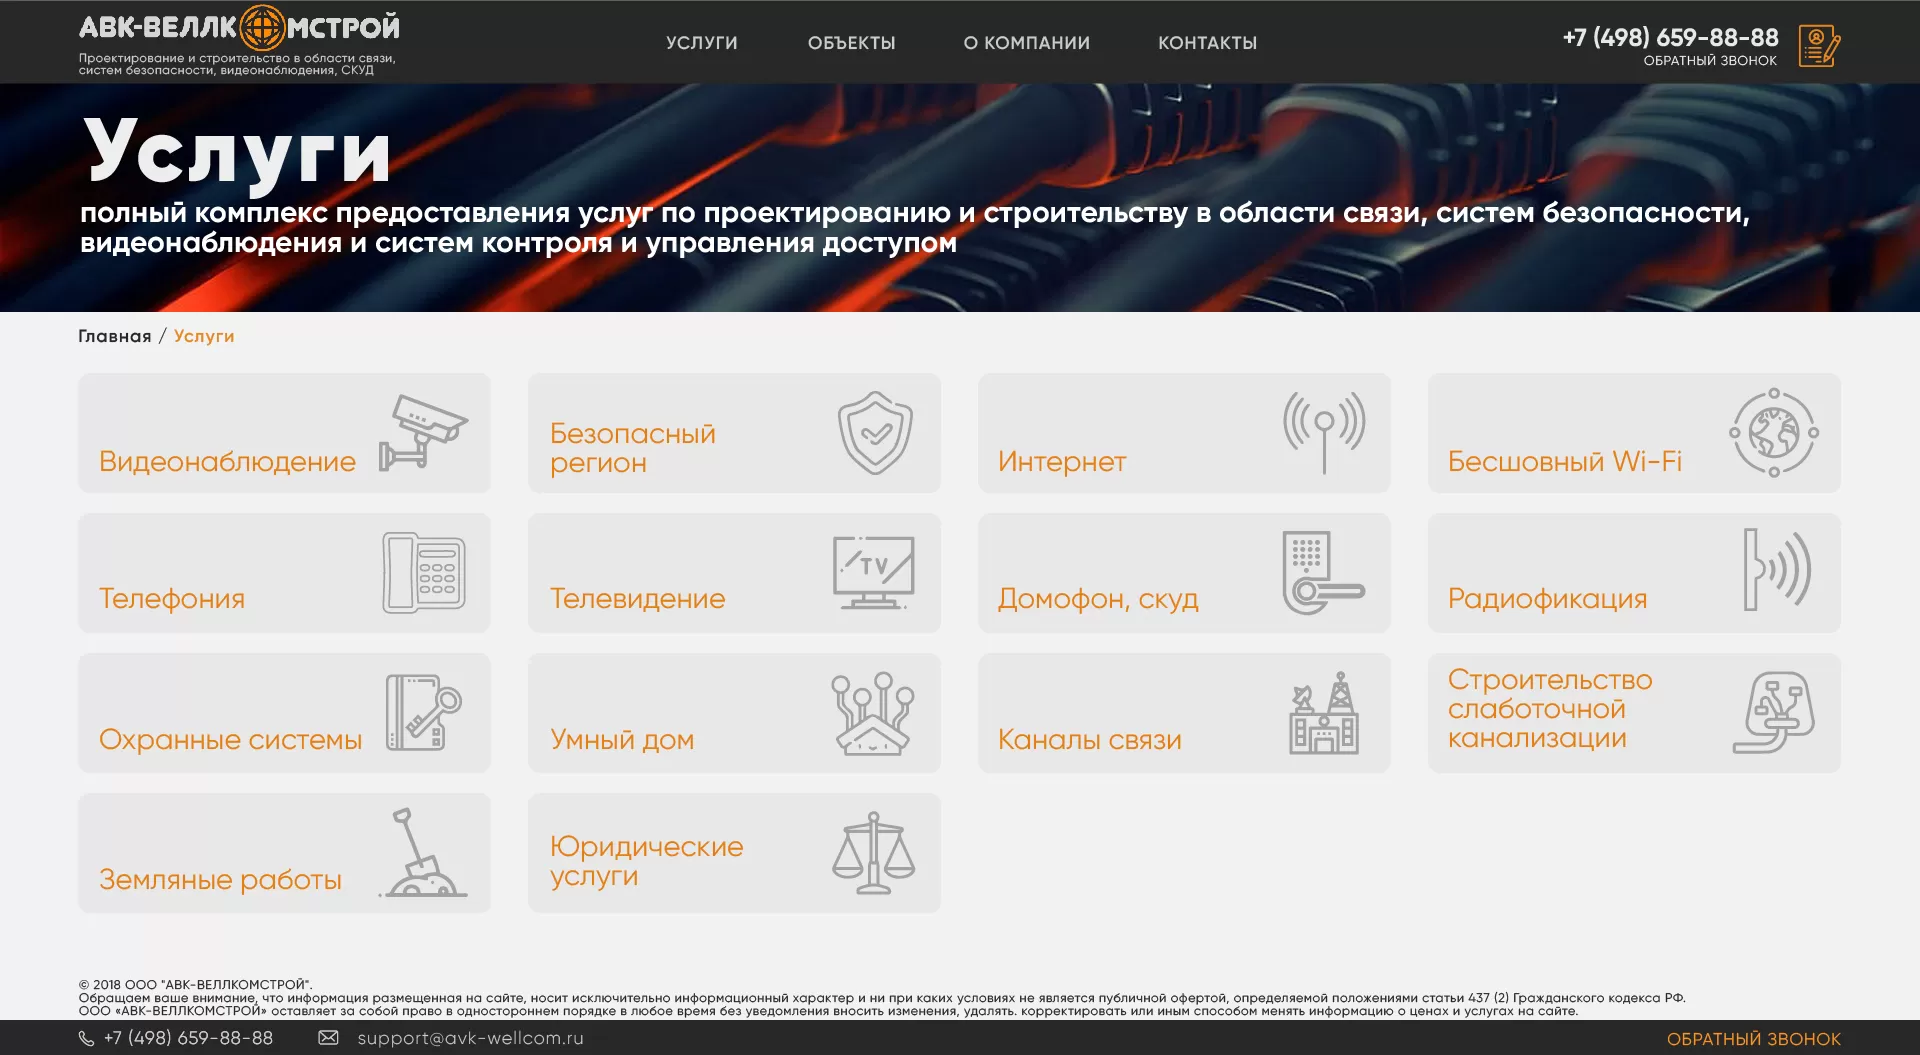 Дизайн адаптивного сайта интернет-провайдера «АВК-ВЕЛЛКОМСТРОЙ»